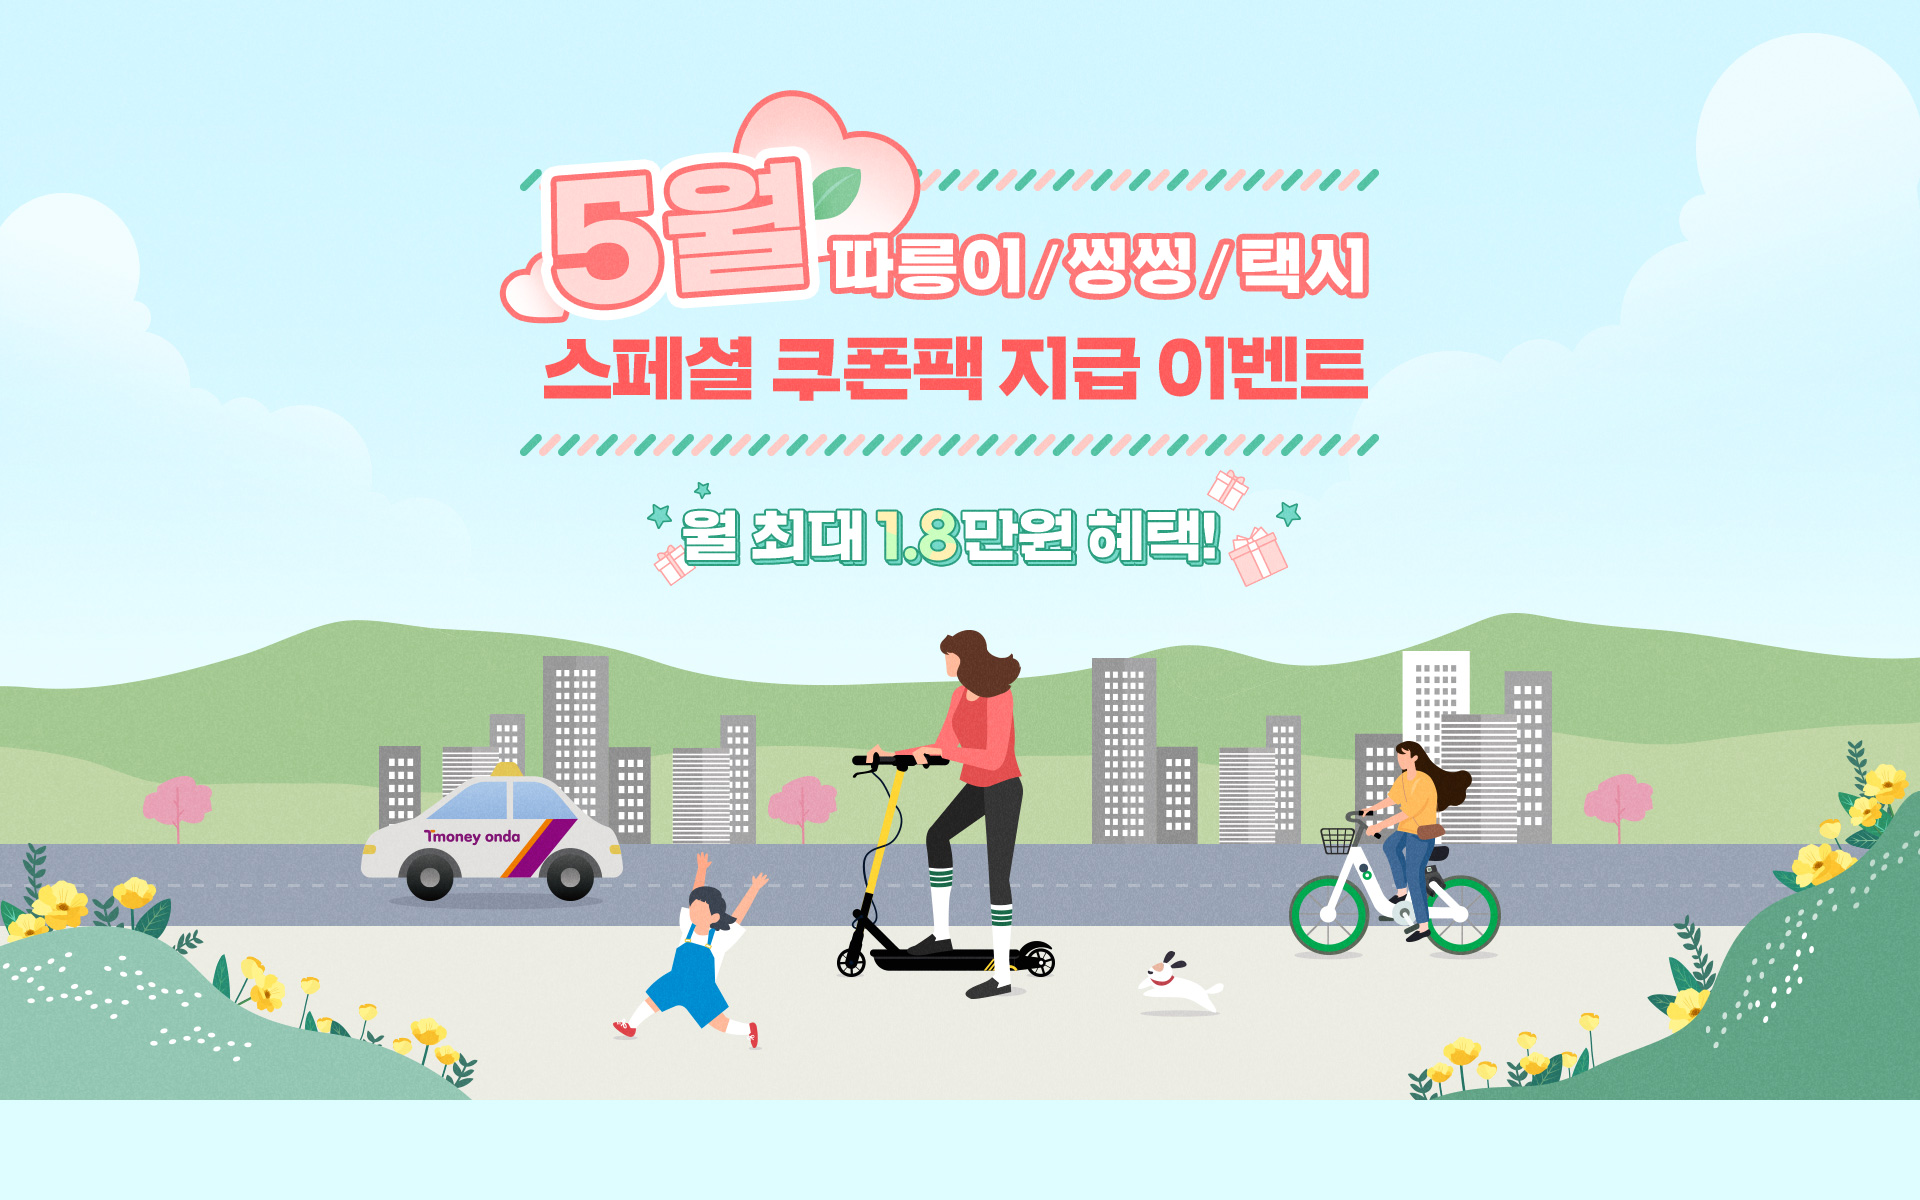 5월 따릉이/씽씽/택시 스페셜 쿠폰팩 지급 이벤트